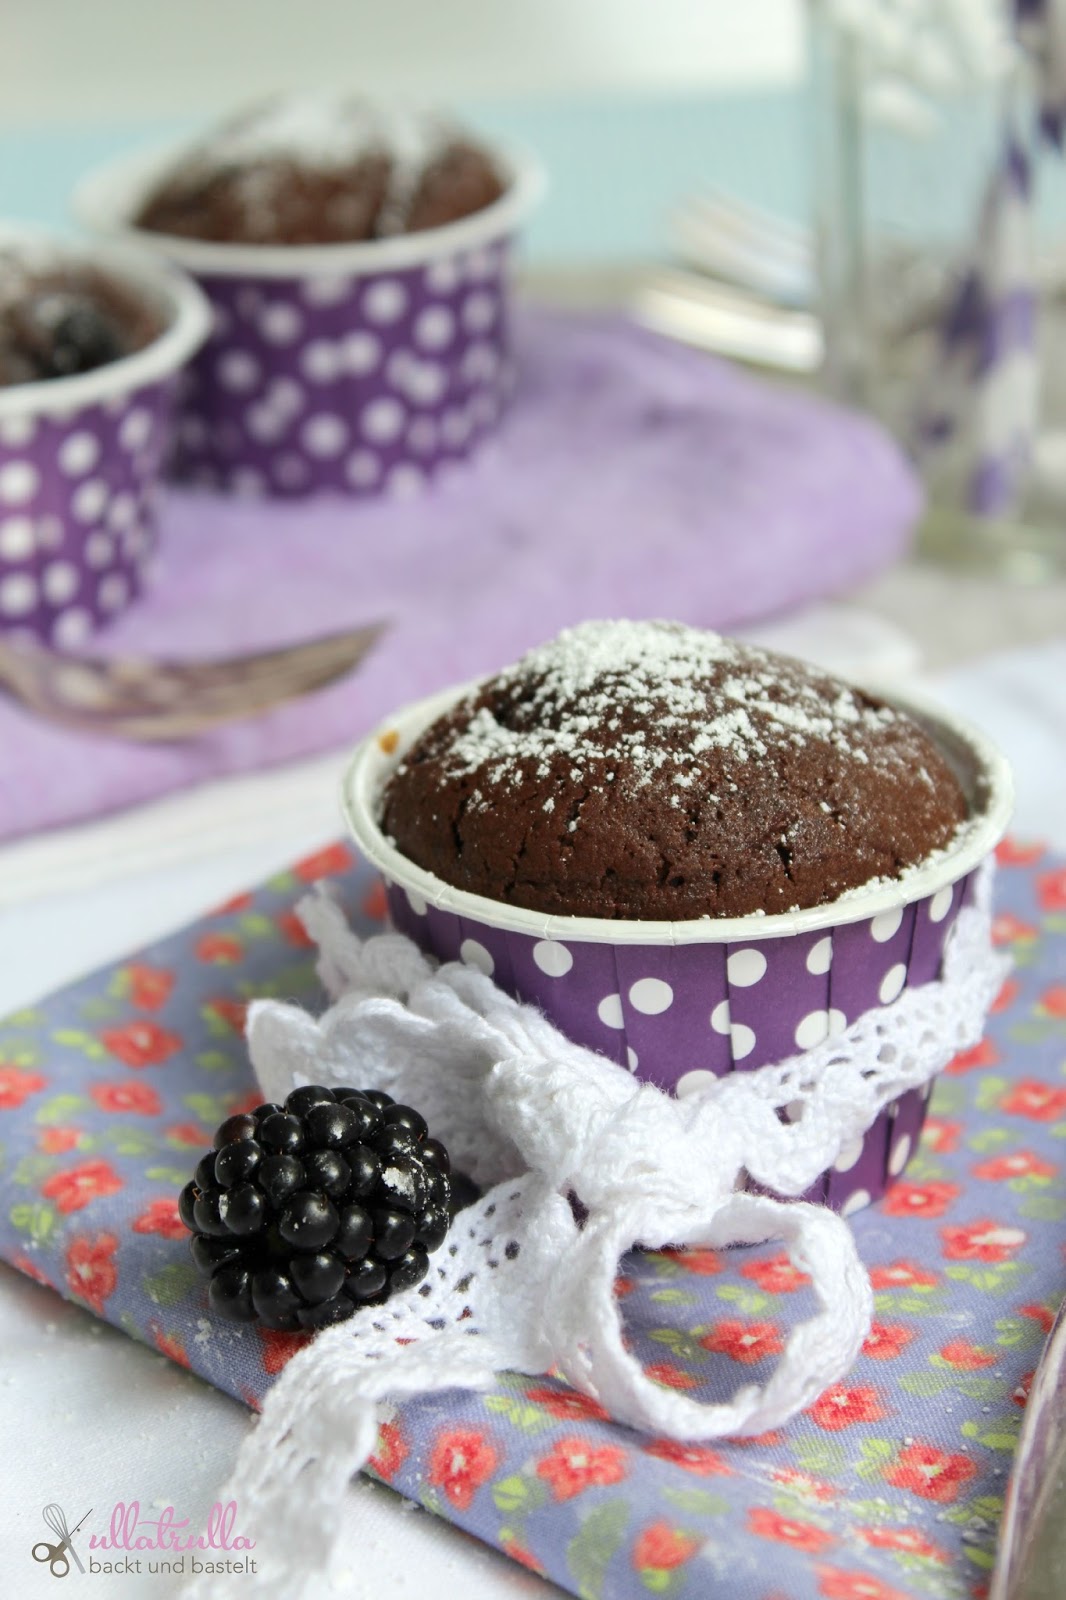 ullatrulla backt und bastelt: Rezept für Schokoladen-Brombeer-Muffins